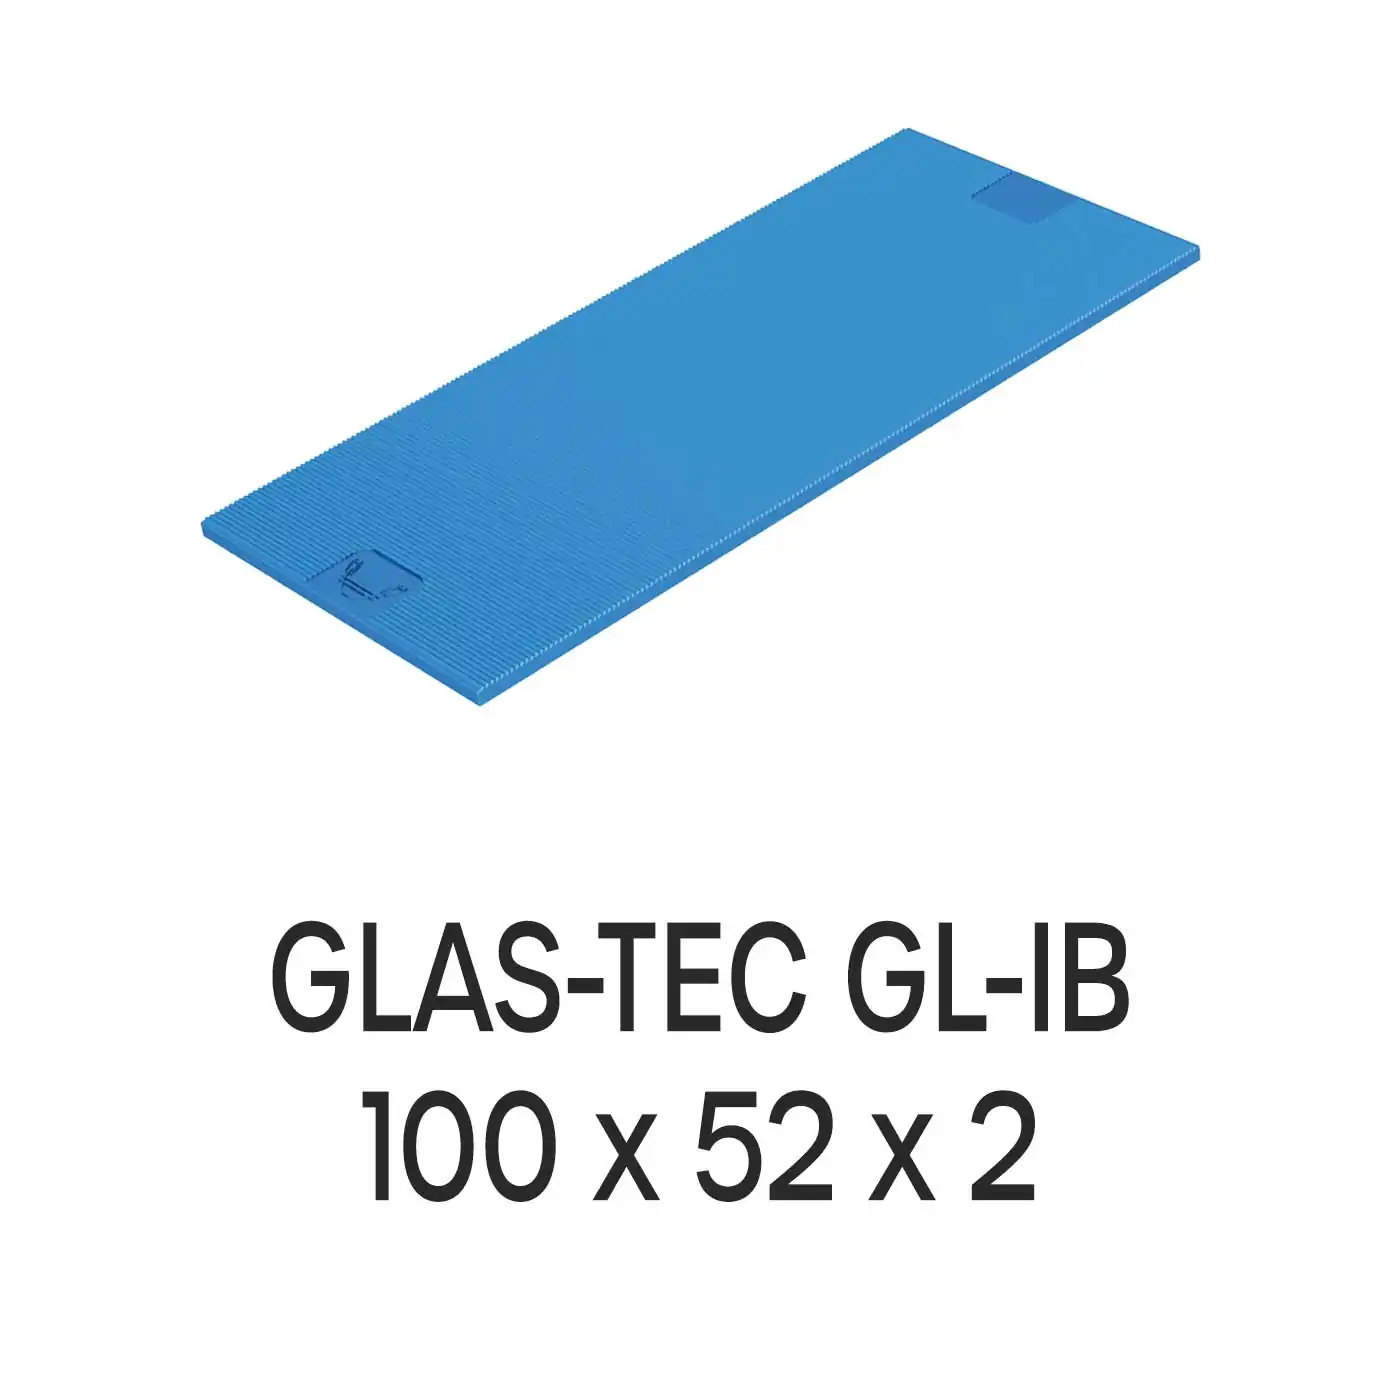 Roto Verglasungsklotz GLAS-TEC GL-IB, 100 x 52 x 2 mm, schwarz, 500 Stück